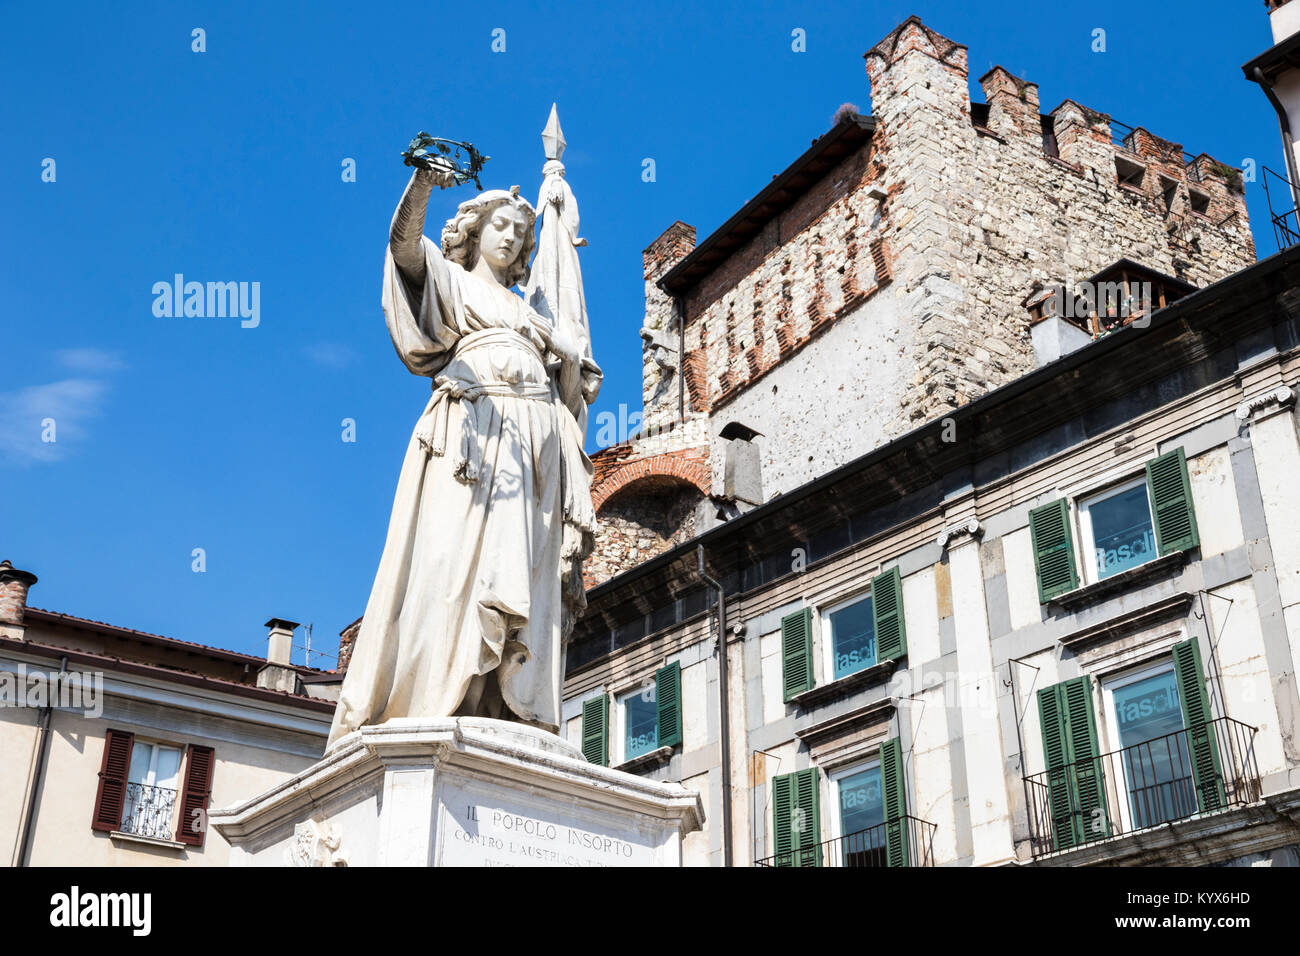 Die Statue des Sieges, ein Denkmal der italienischen Krieg gegen Österreich. Piazza della Loggia, Brescia, Italien Stockfoto